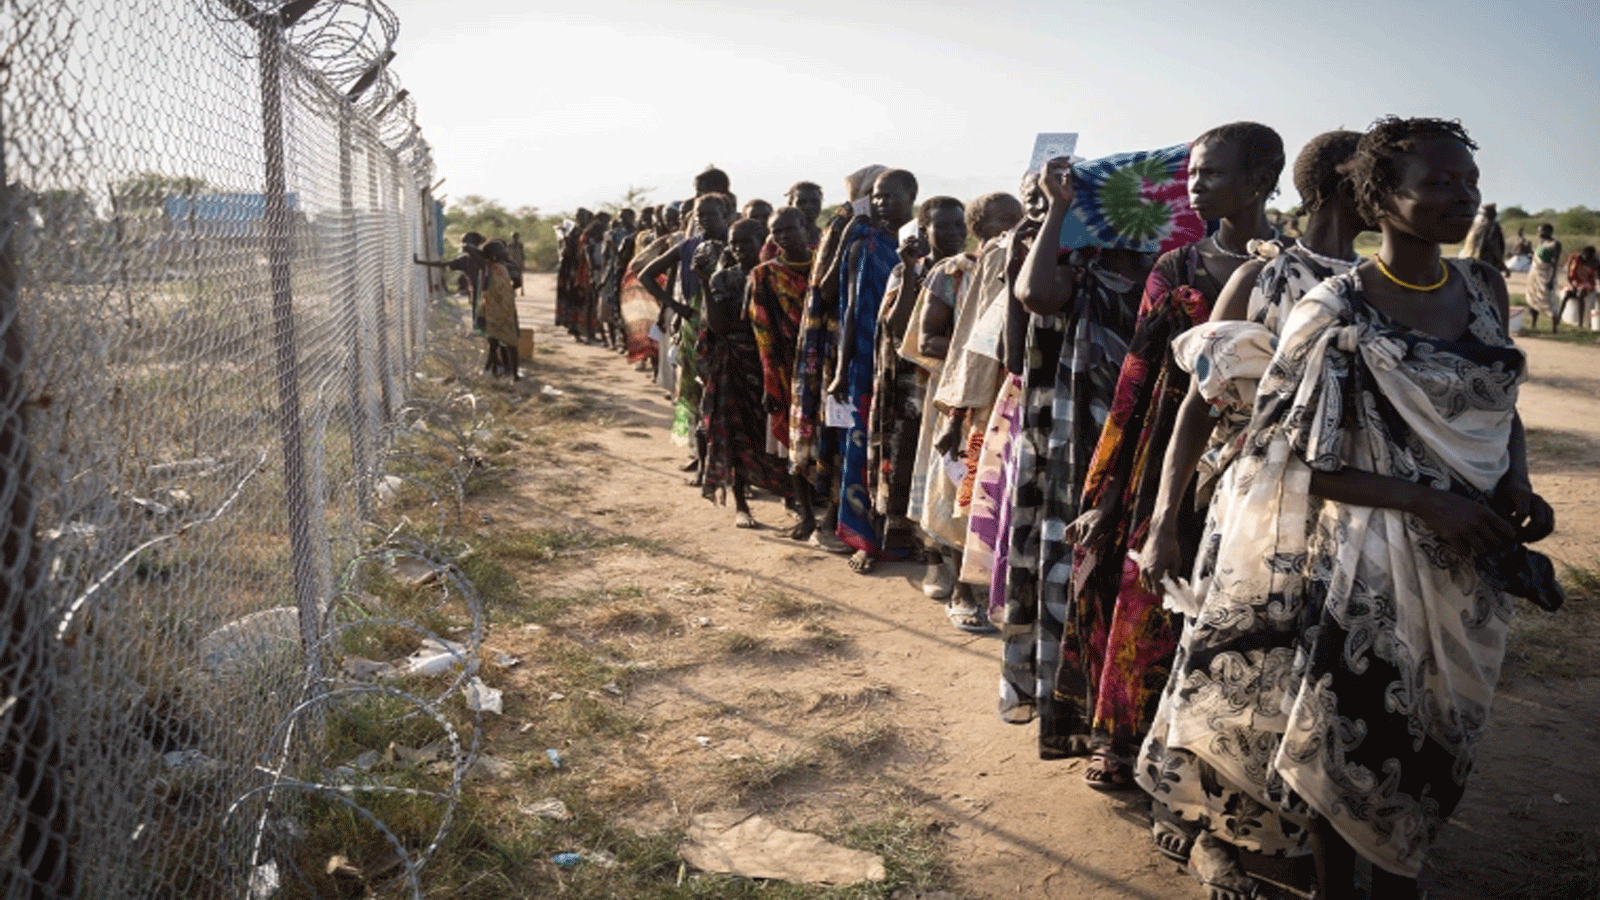 نساء من مجموعة المورلي العرقية ينتظرن في طابور لتوزيع الغذاء من قبل برنامج الغذاء العالمي التابع للأمم المتحدة في جوموروك، جنوب السودان، في 10 يونيو 2021، حيث تعرضت قريتهم مؤخرًا للهجوم من قبل مجموعة مسلحة